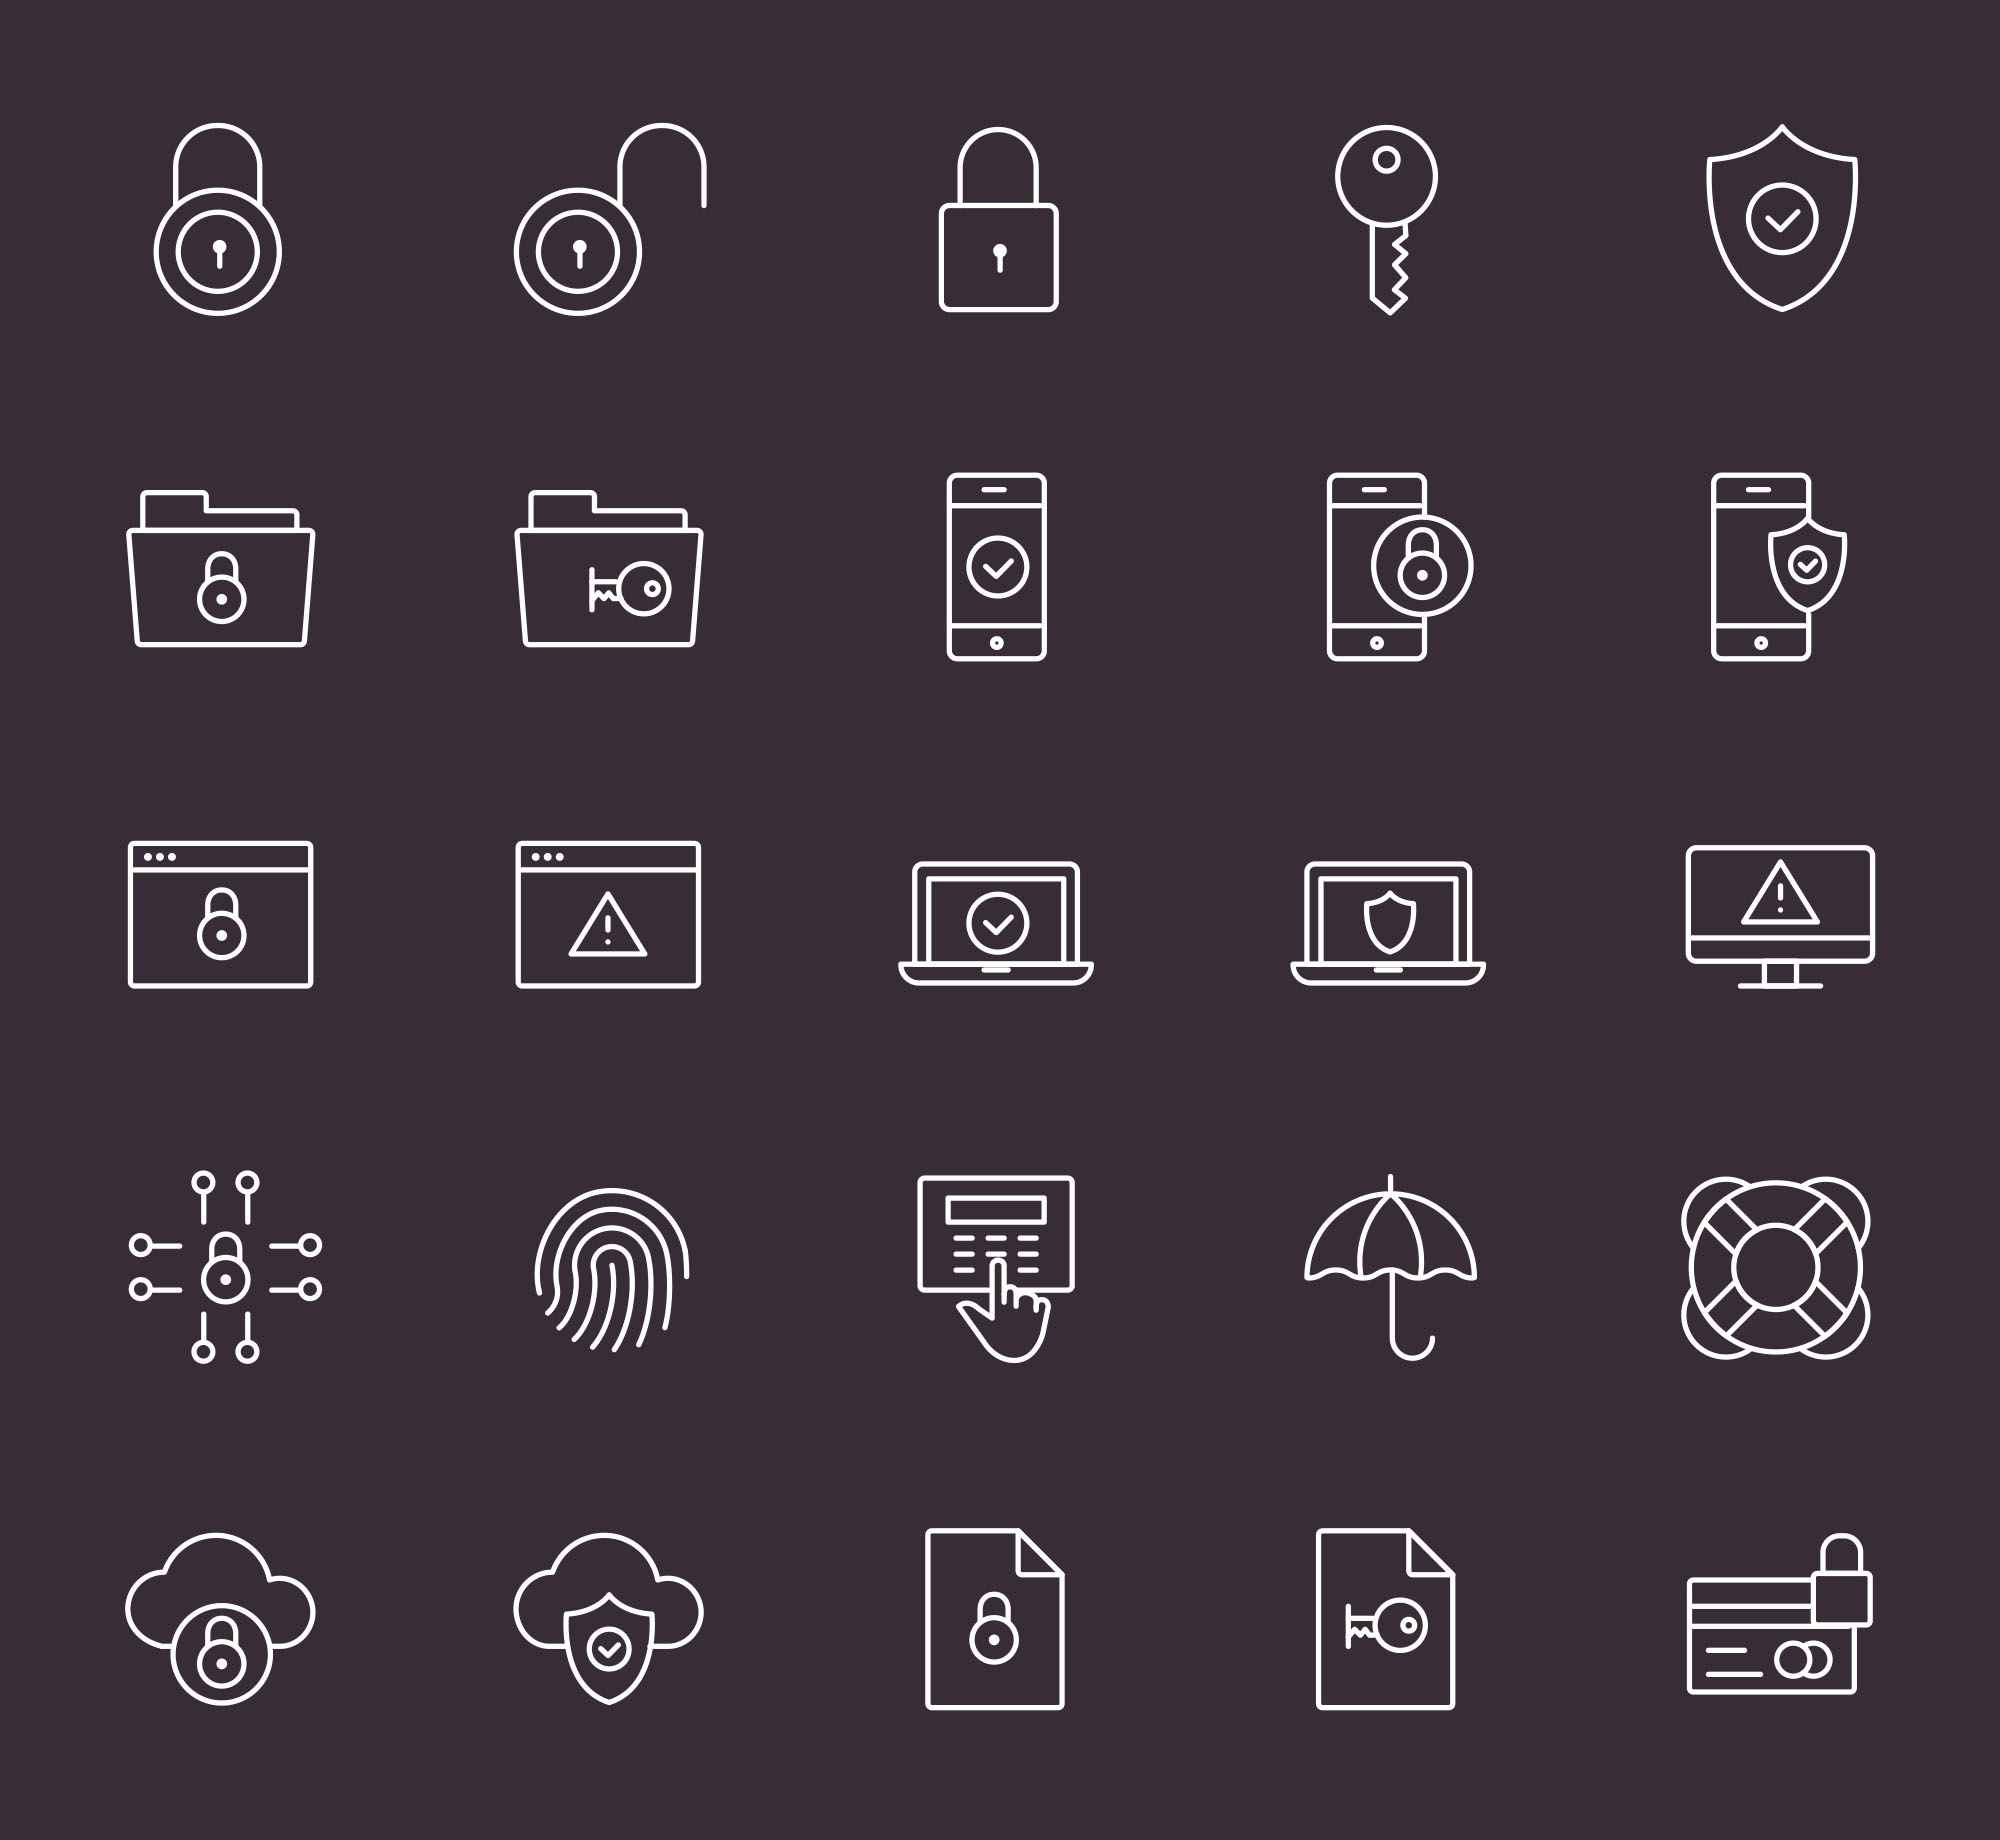 25枚安全相关主题矢量图标素材 25 Security Icons插图(1)